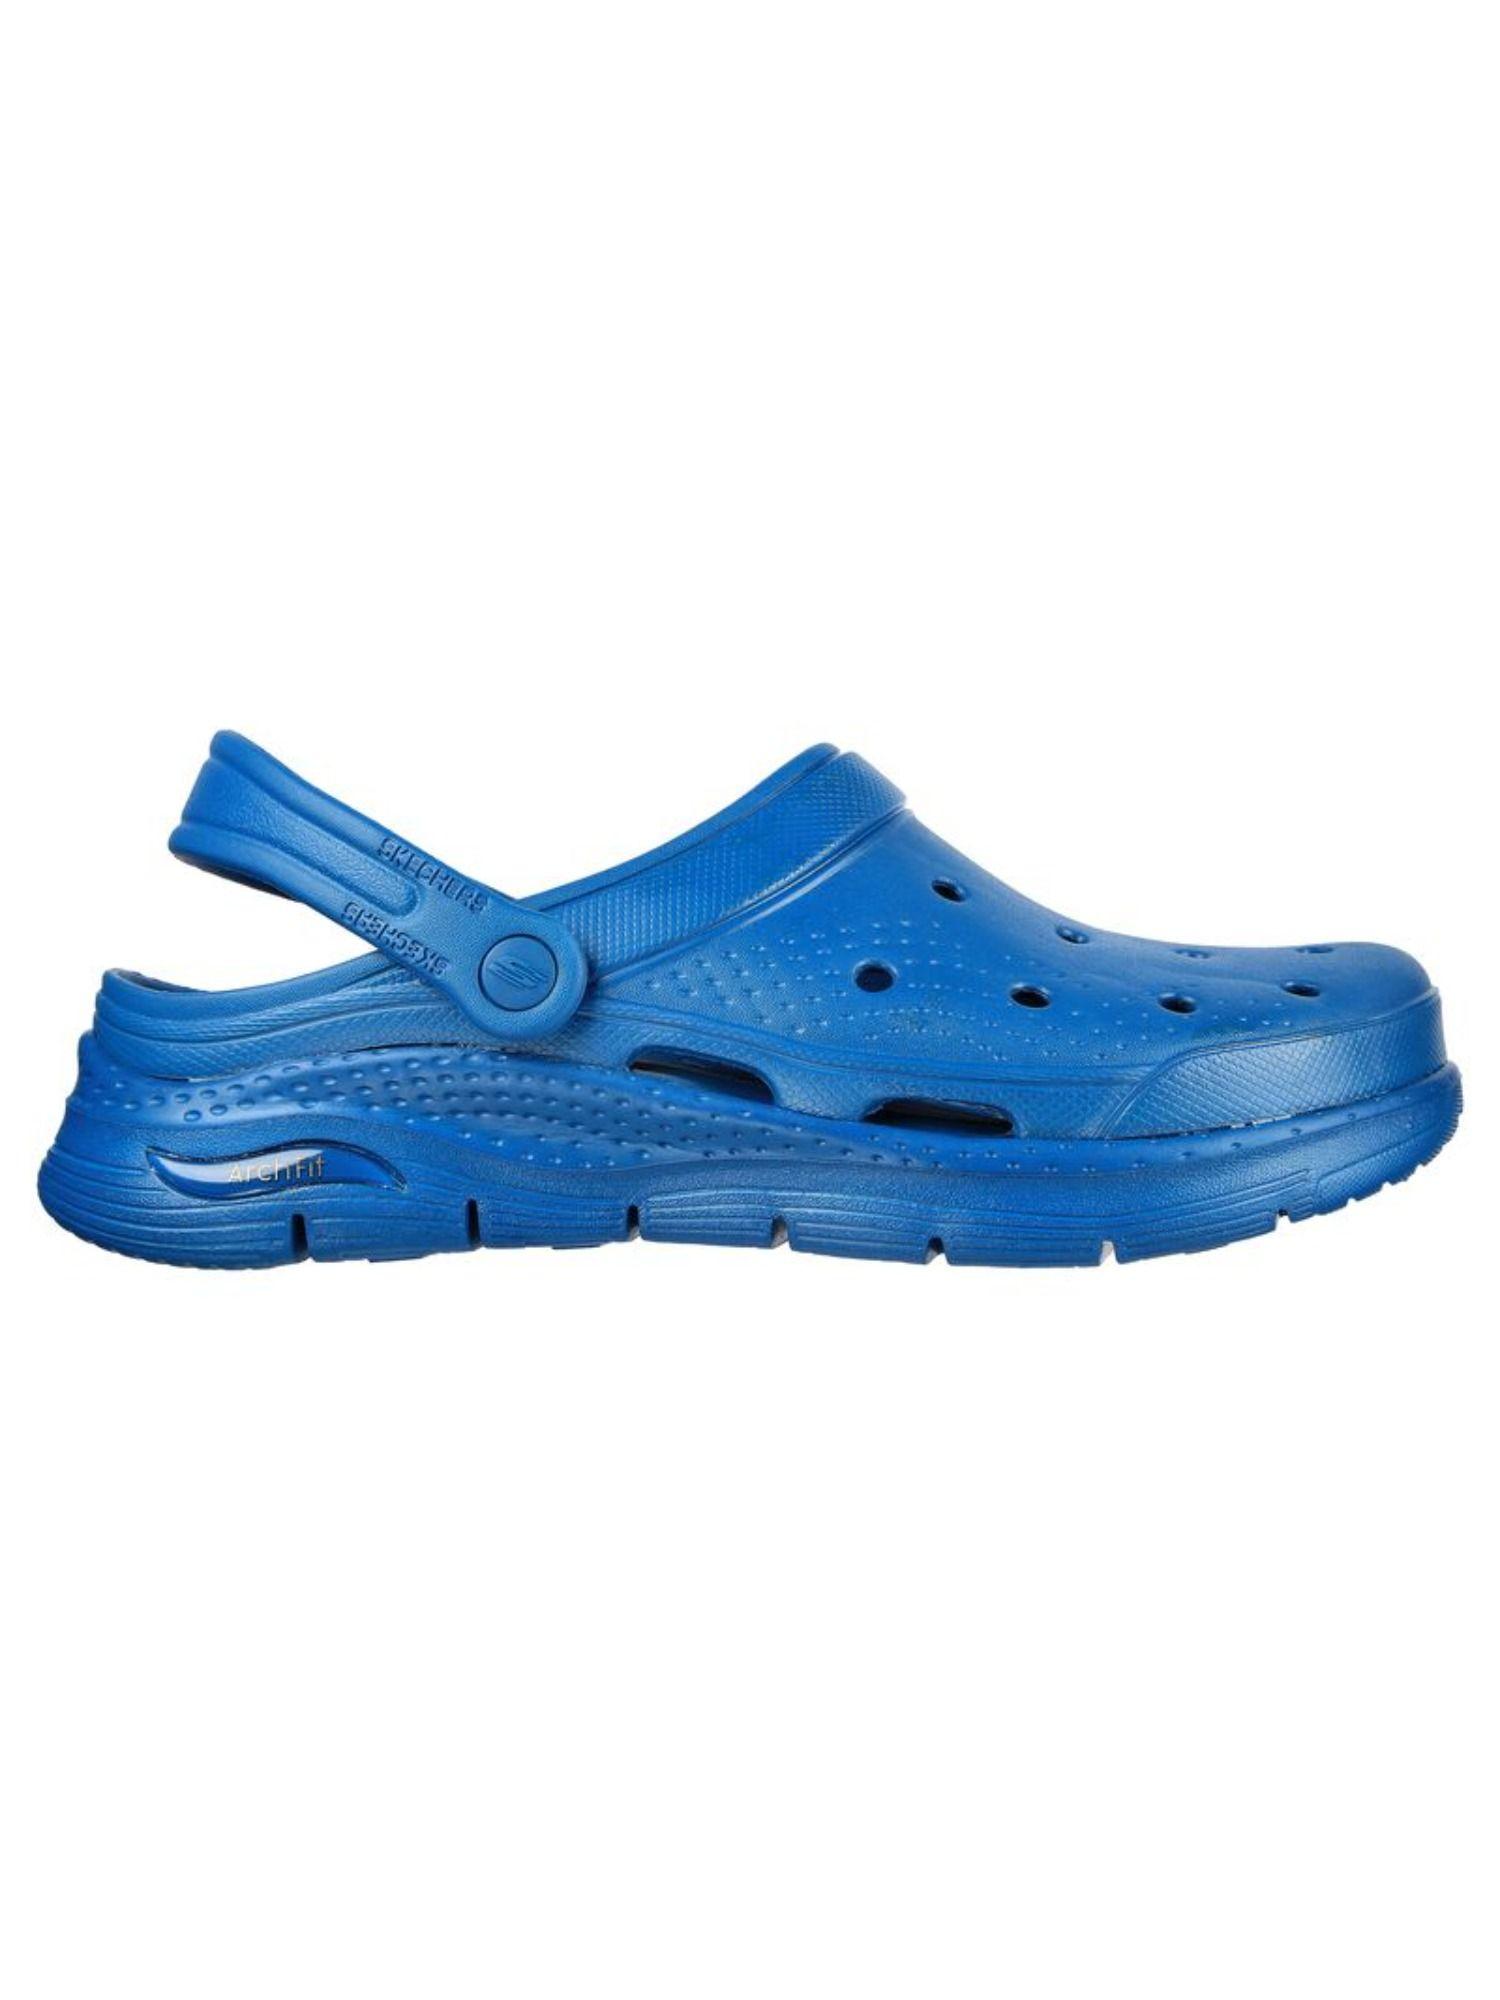 arch fit - valiant blue sandal